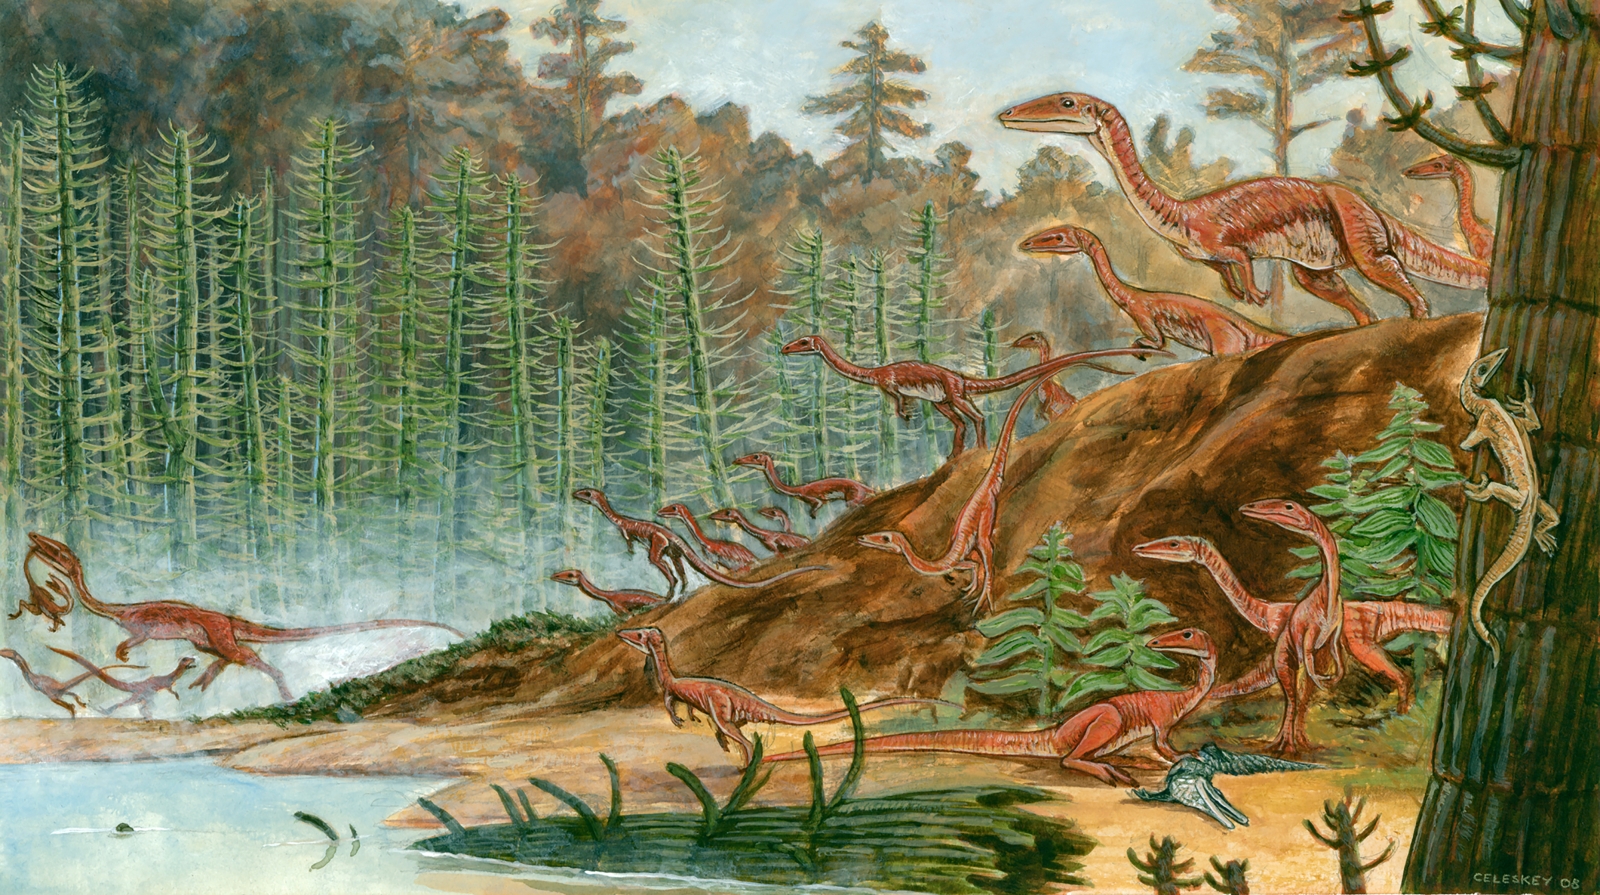 Организмы древних времен. Целофизисы мезозойской эры. Триасовый период Целофиз. Динозавр карлик. Целофизисов.